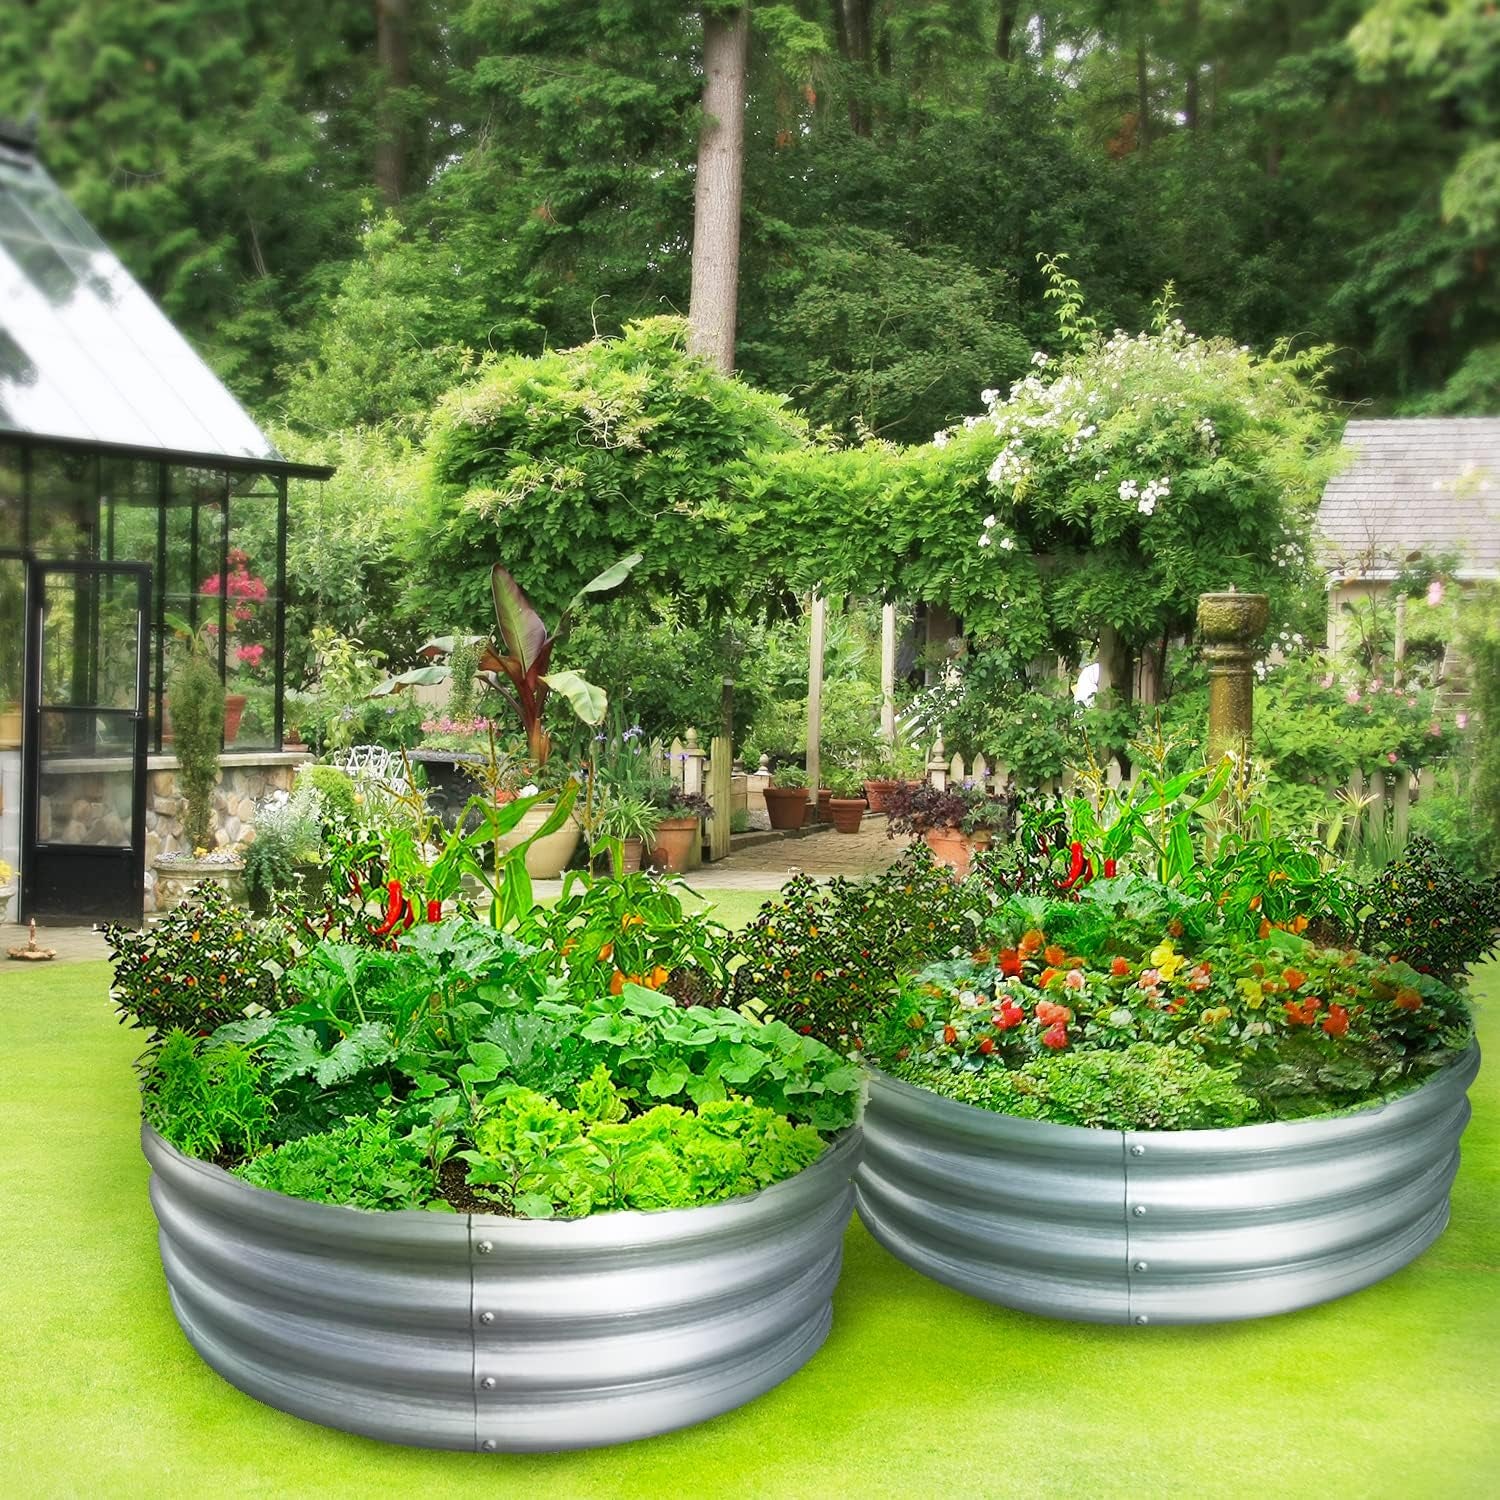 Galvanized Raised Garden Bed Kit,3Ftx3Ftx1 Ft-Round Metal Raised Garden-2Pack,Raised Garden Boxes Outdoor, Metal Raised Garden Beds for Vegetables, Flowers, Herbs…